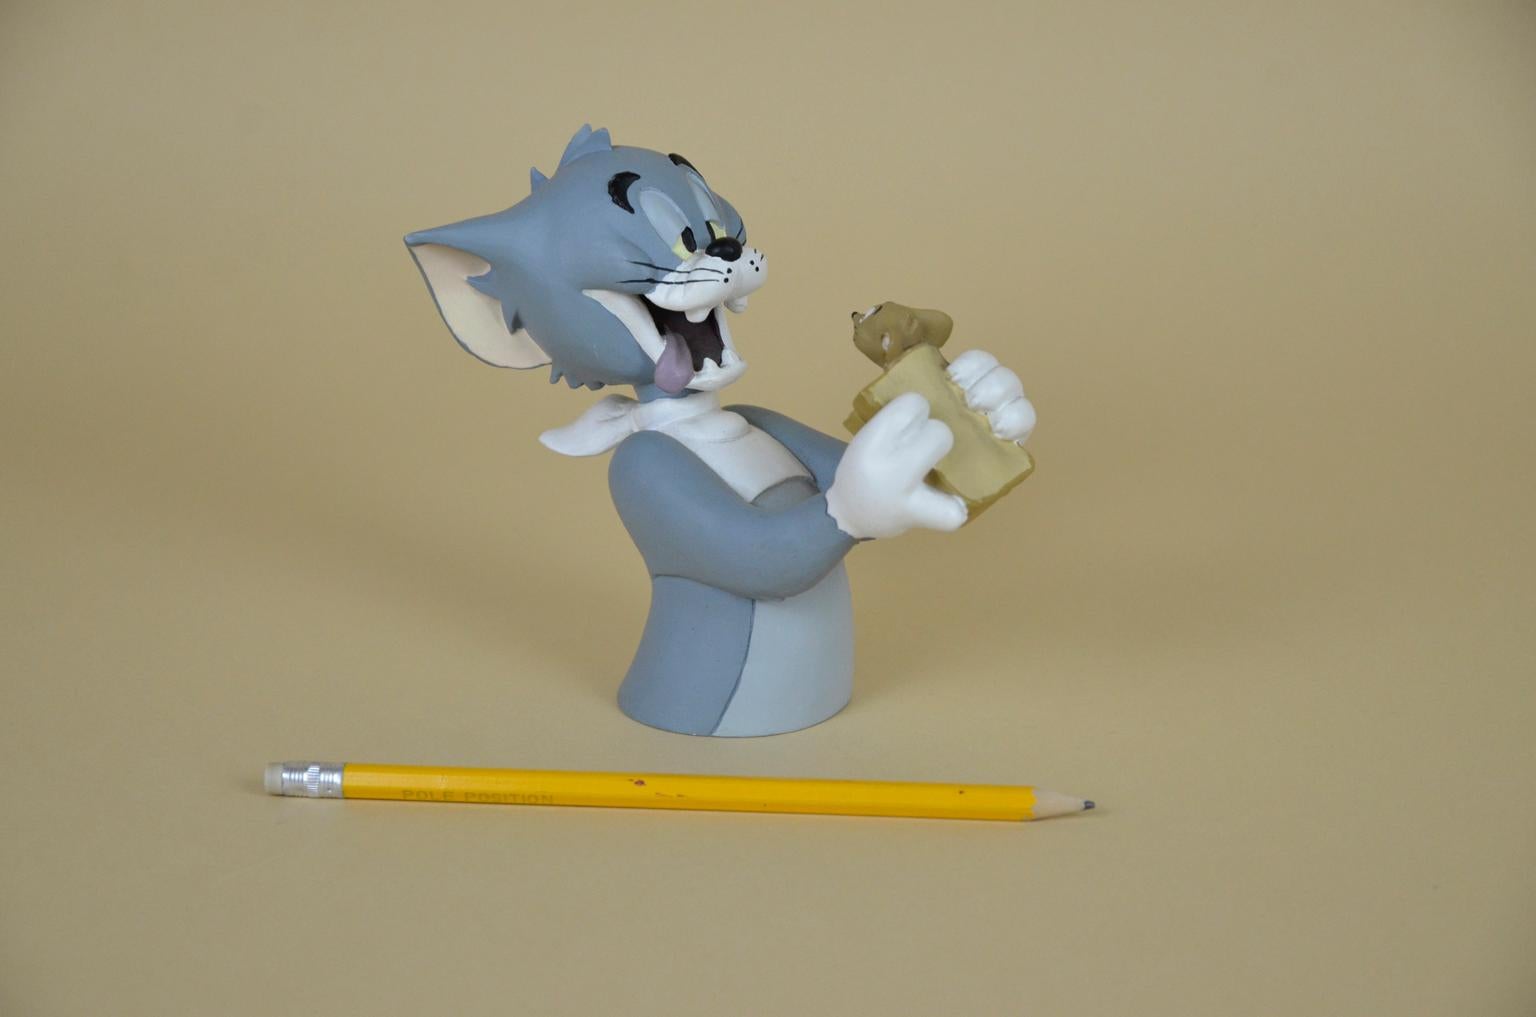 Tom und Jerry - Tom isst Jerry in einem Sandwich, handbemalt von der französischen Firma Demons & Merveilles für Hanna-Barbera, realisiert in Harz im Jahr 1997.

Die Statue hat nicht die Originalverpackung.